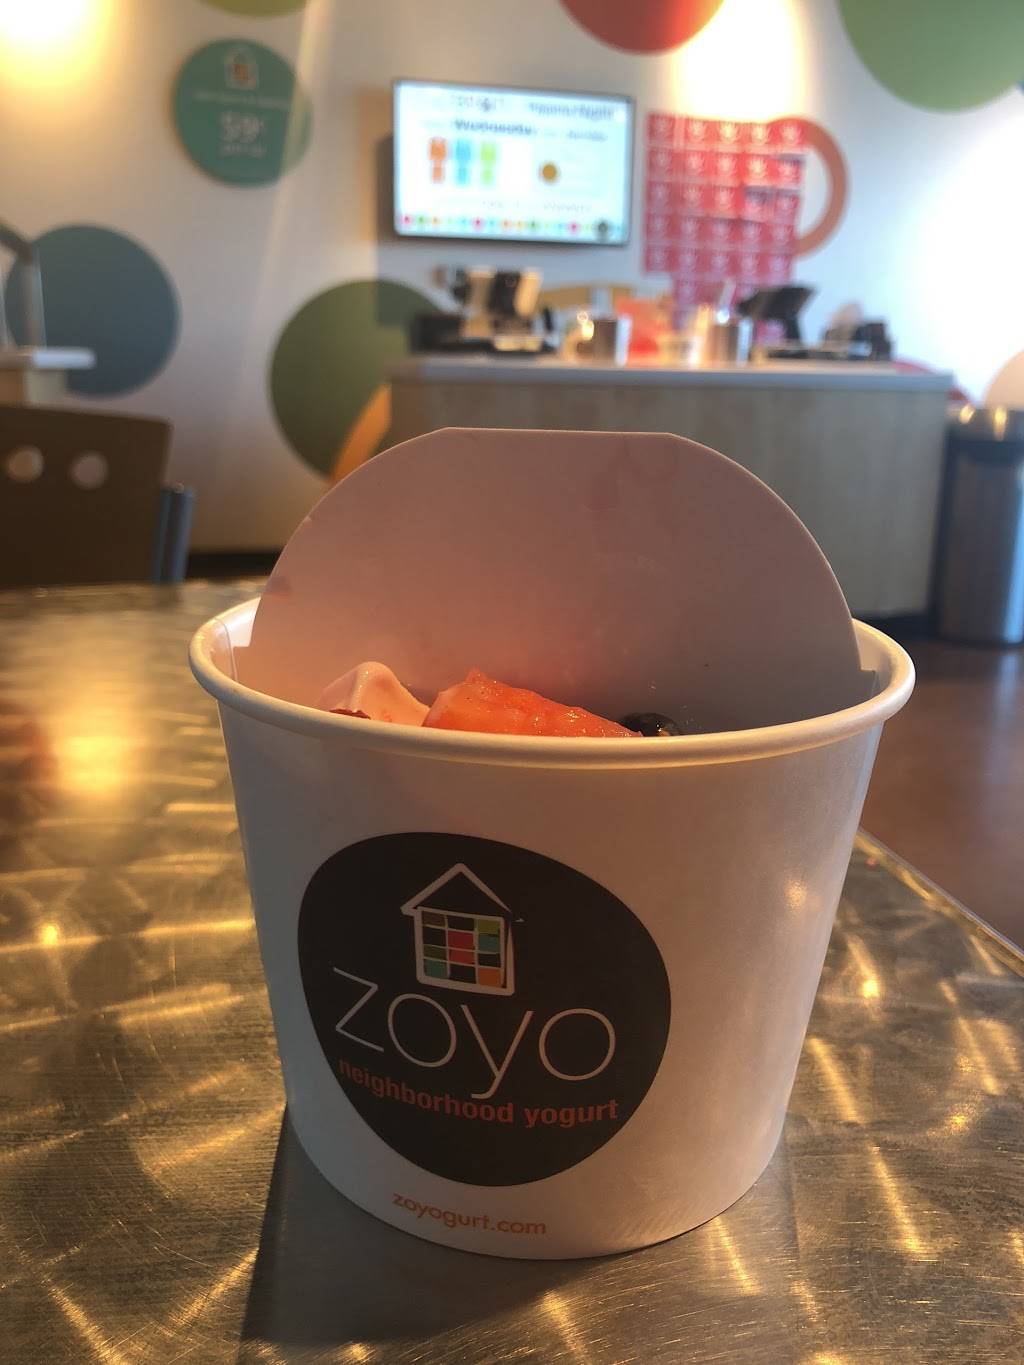 Zoyo Neighborhood Yogurt | 5549 E Indian School Rd #103, Phoenix, AZ 85018 | Phone: (602) 334-1536